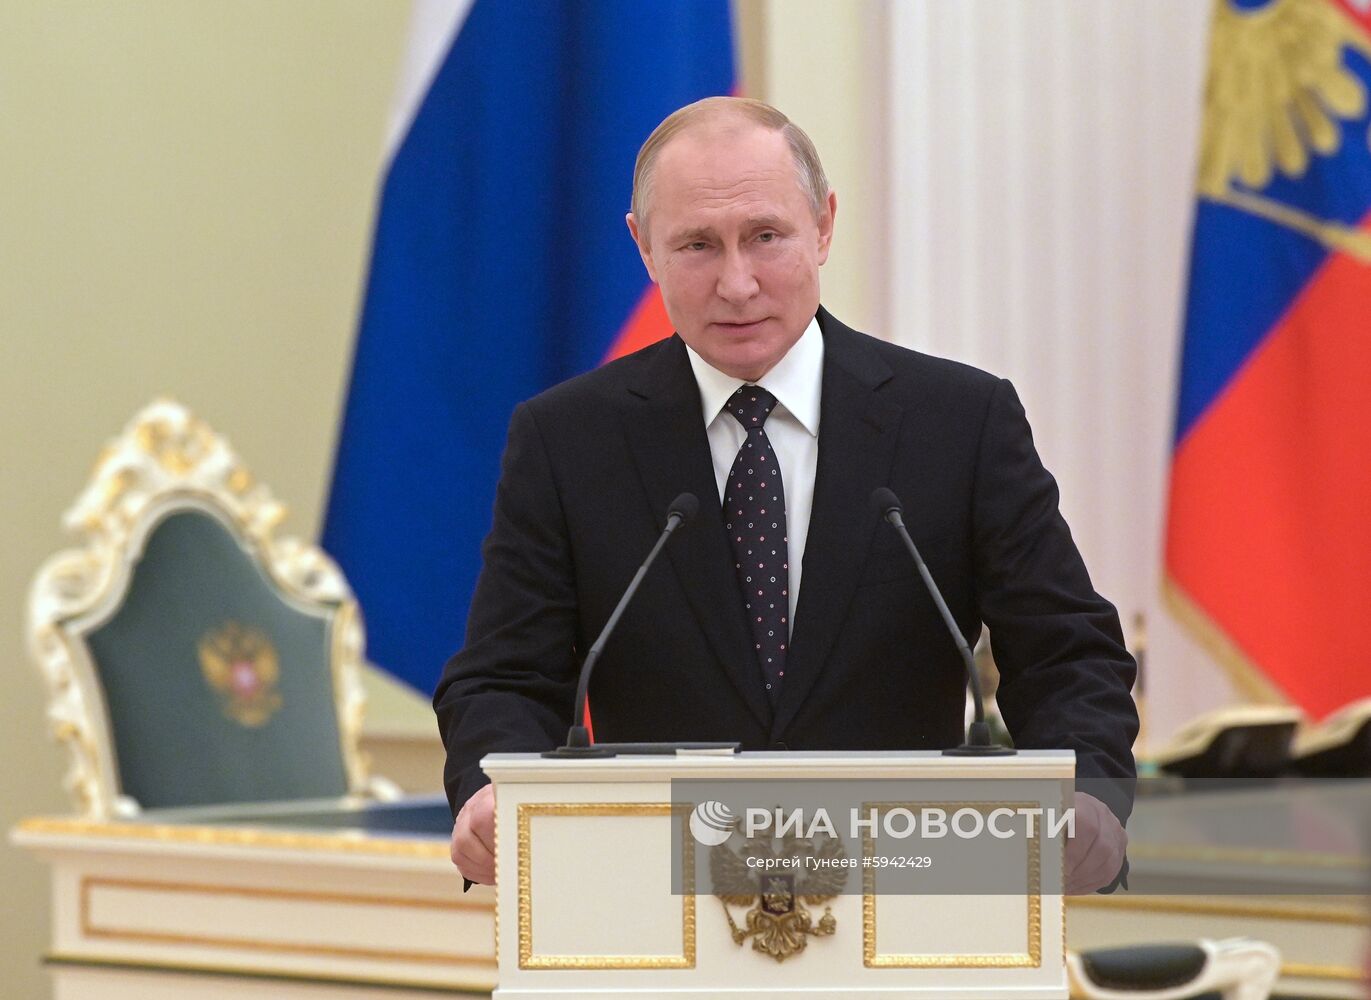 Президент РФ В. Путин принял участие в церемонии подписания соглашений между правительством РФ и госкомпаниями